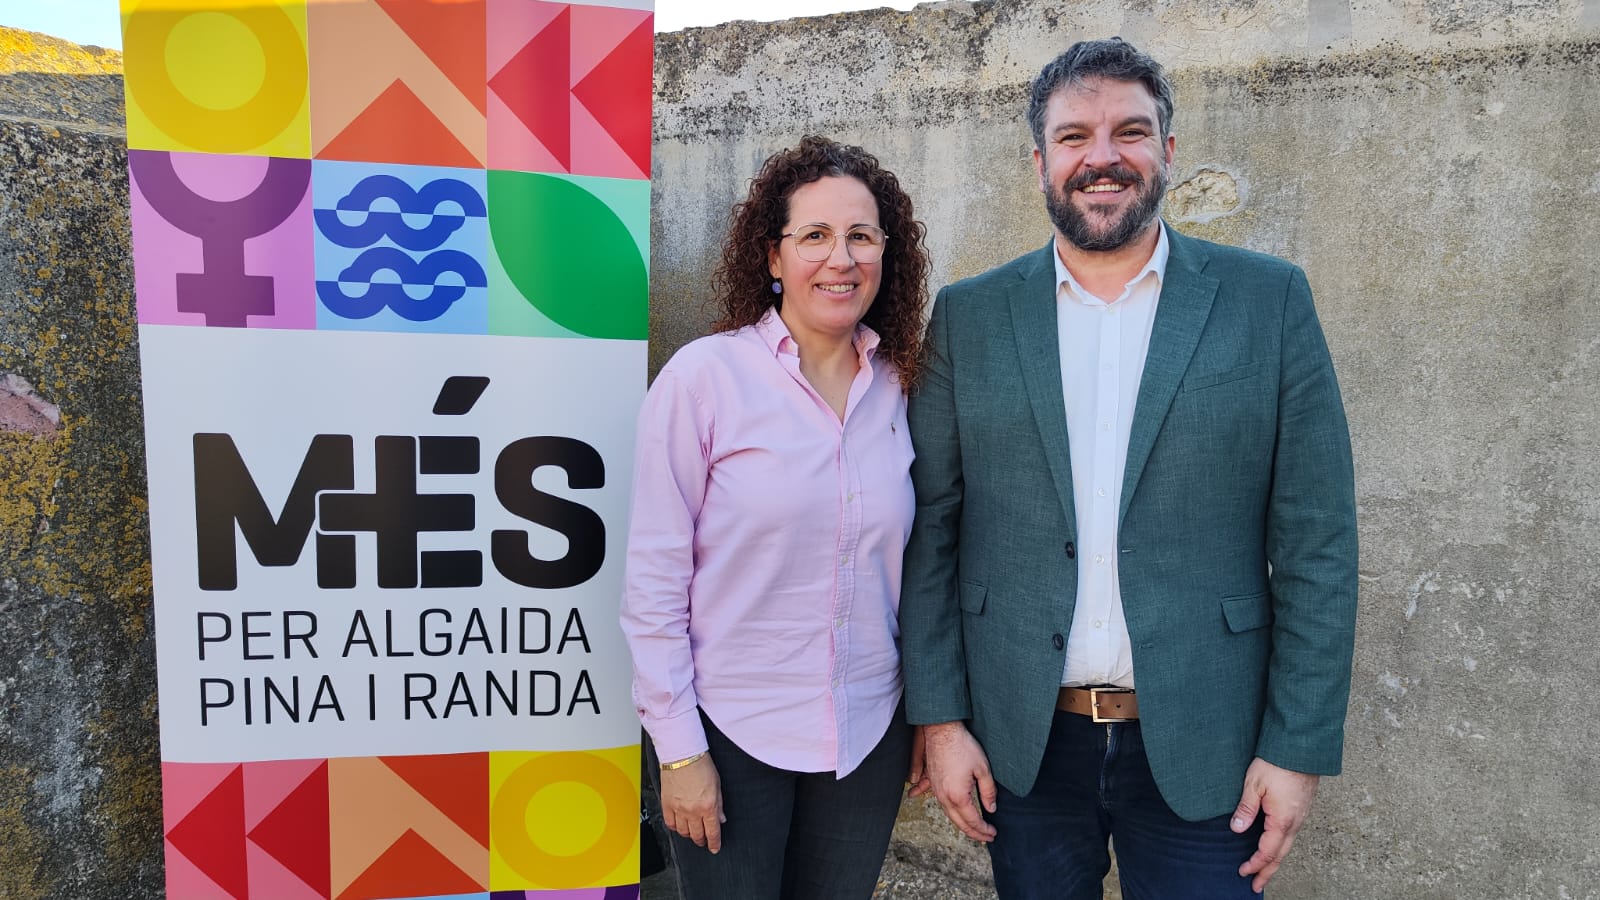 Ratificada la candidatura de Més per Algaida, Pina i Randa